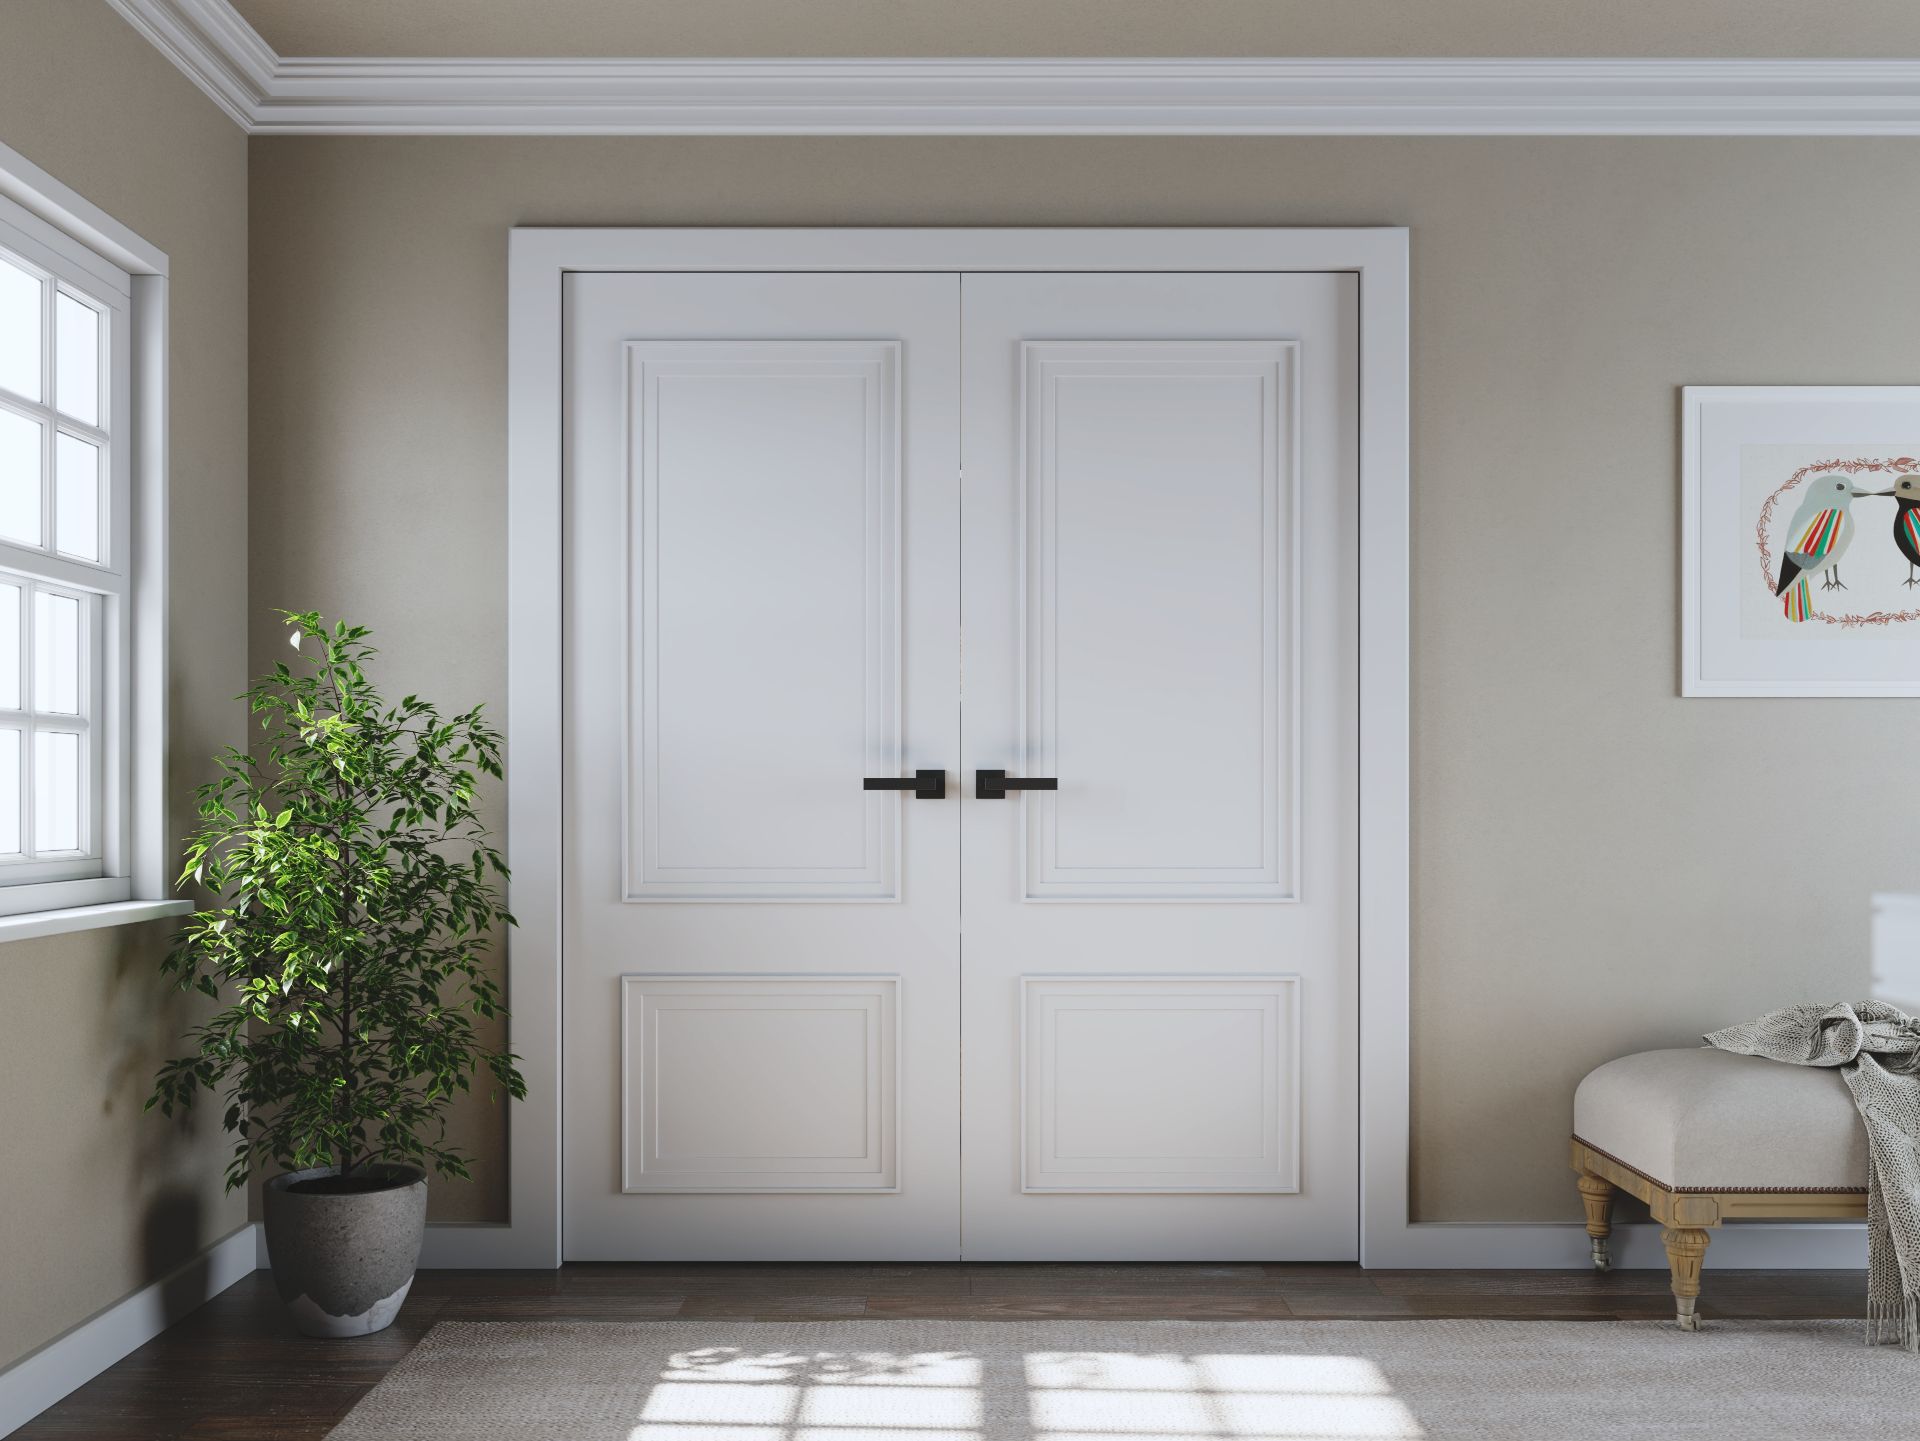 Doors Plus - Internal Tall Wide Doors - Double Hinged Wardrobe Doors - Painted White